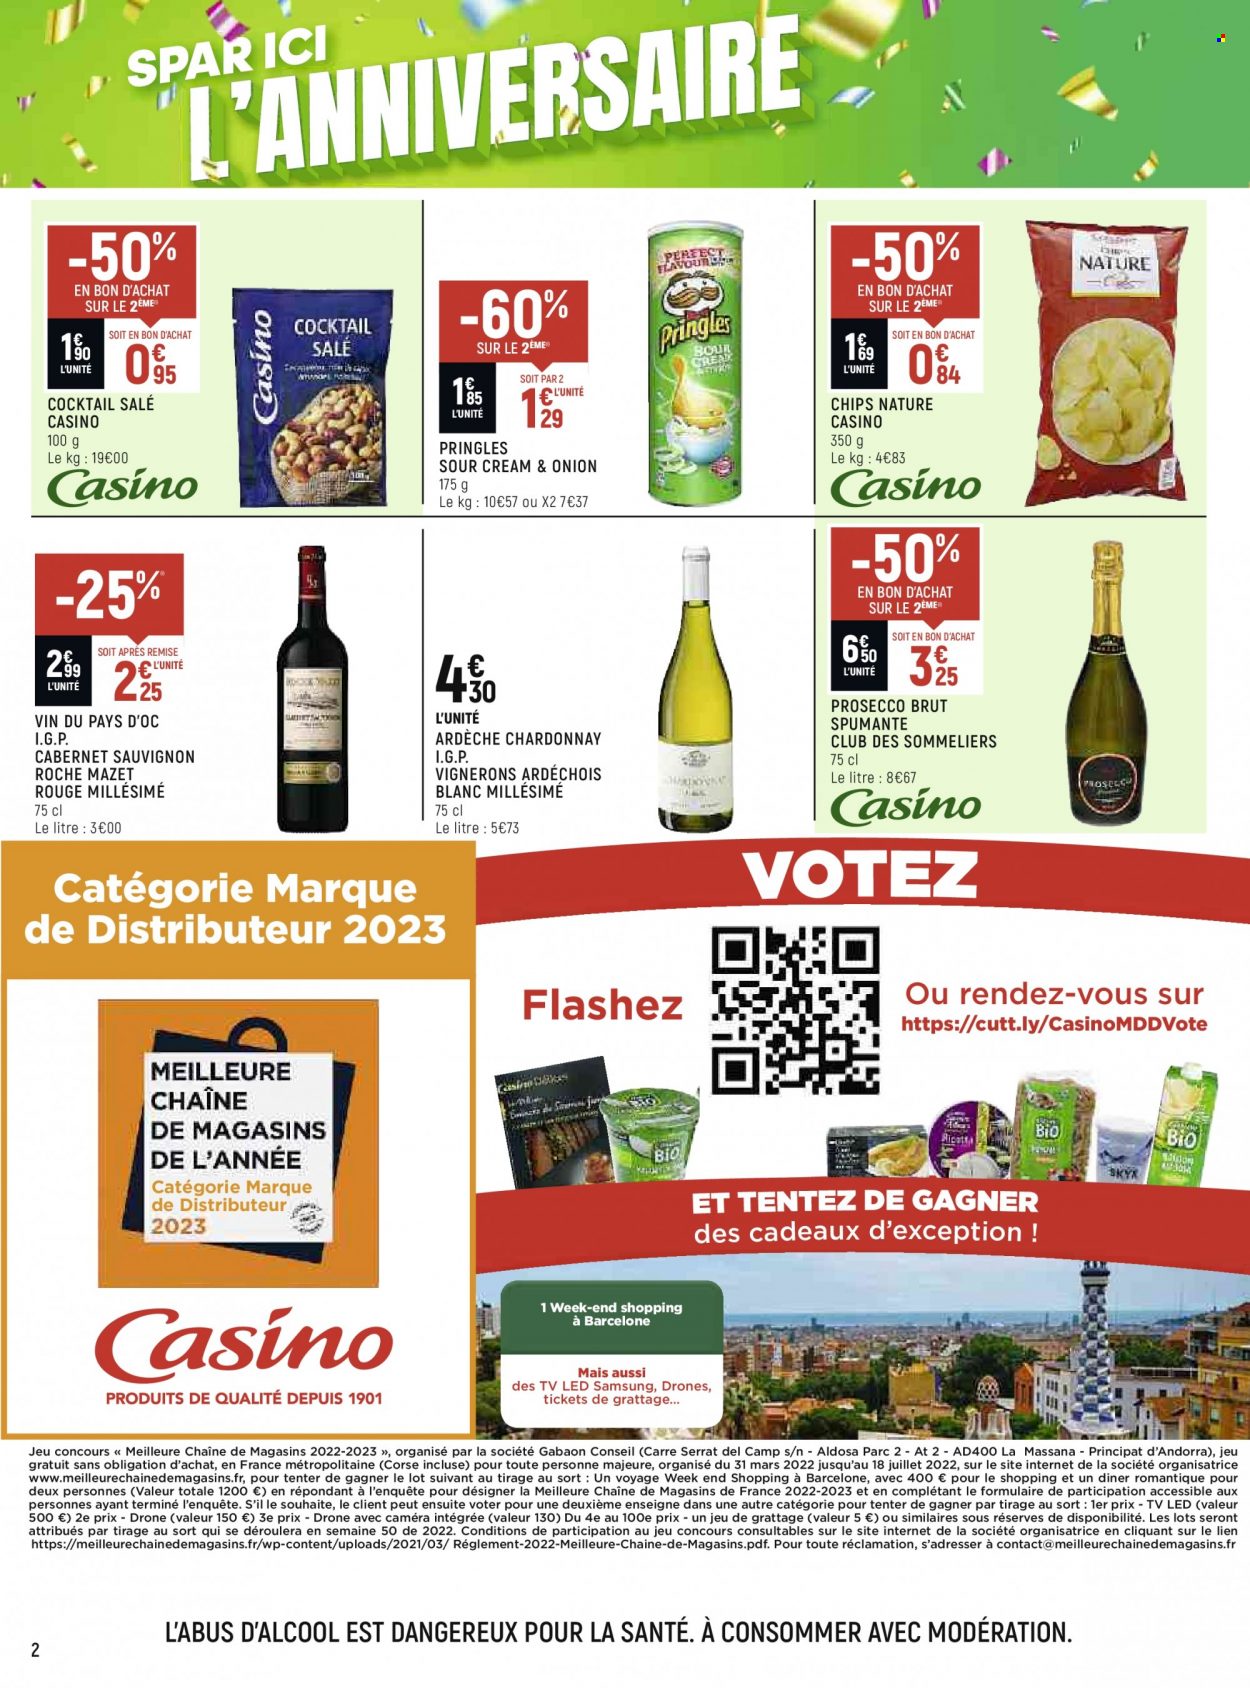 thumbnail - Catalogue Spar Supermarché - 18/05/2022 - 29/05/2022 - Produits soldés - Samsung, chips, Pringles, vin blanc, vin rouge, Prosecco, vin, Cabernet Sauvignon, drone, téléviseur, téléviseur LED. Page 2.